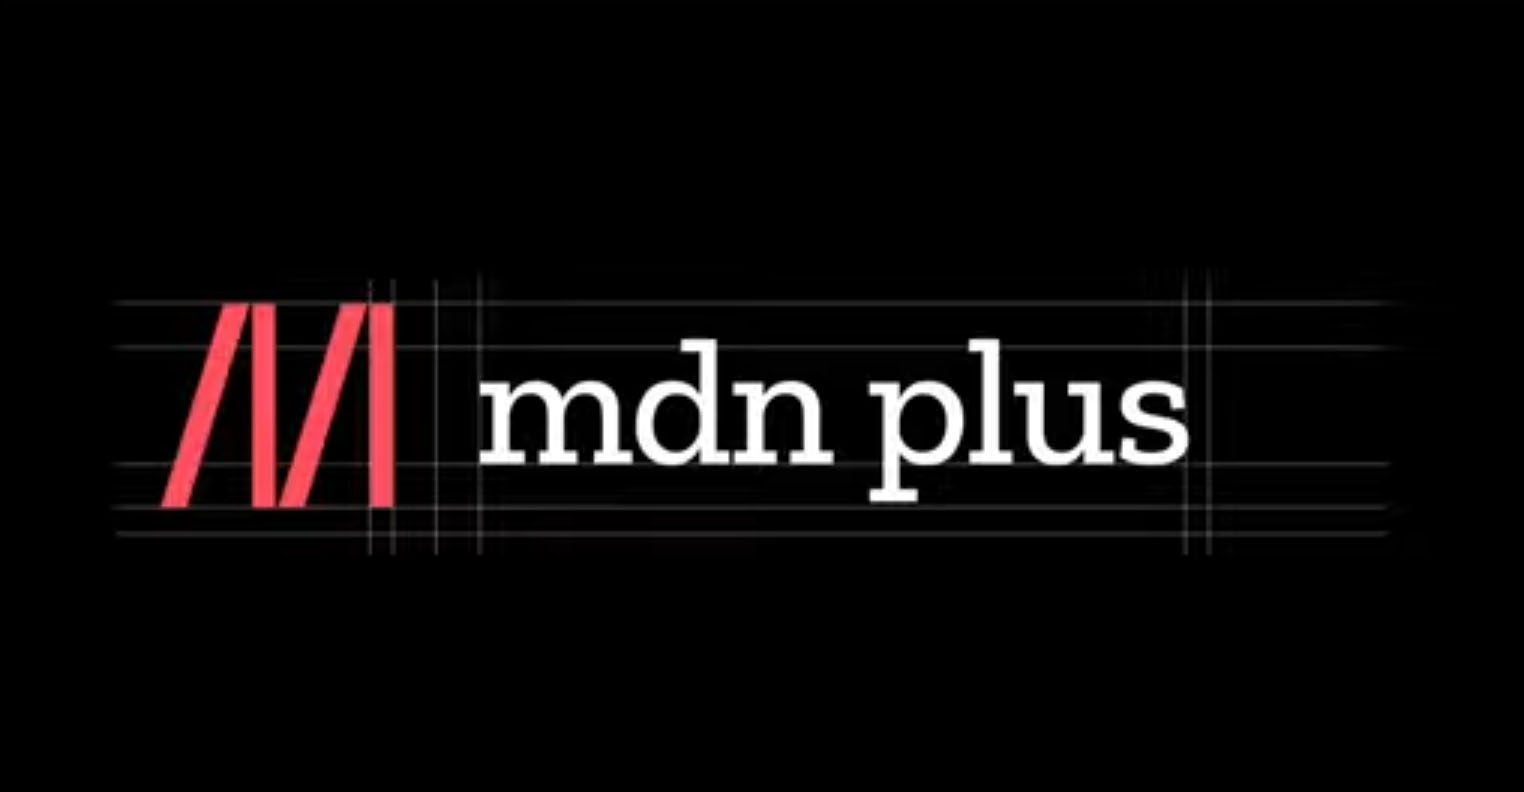 Mozilla geht mit MDN Plus an den Start